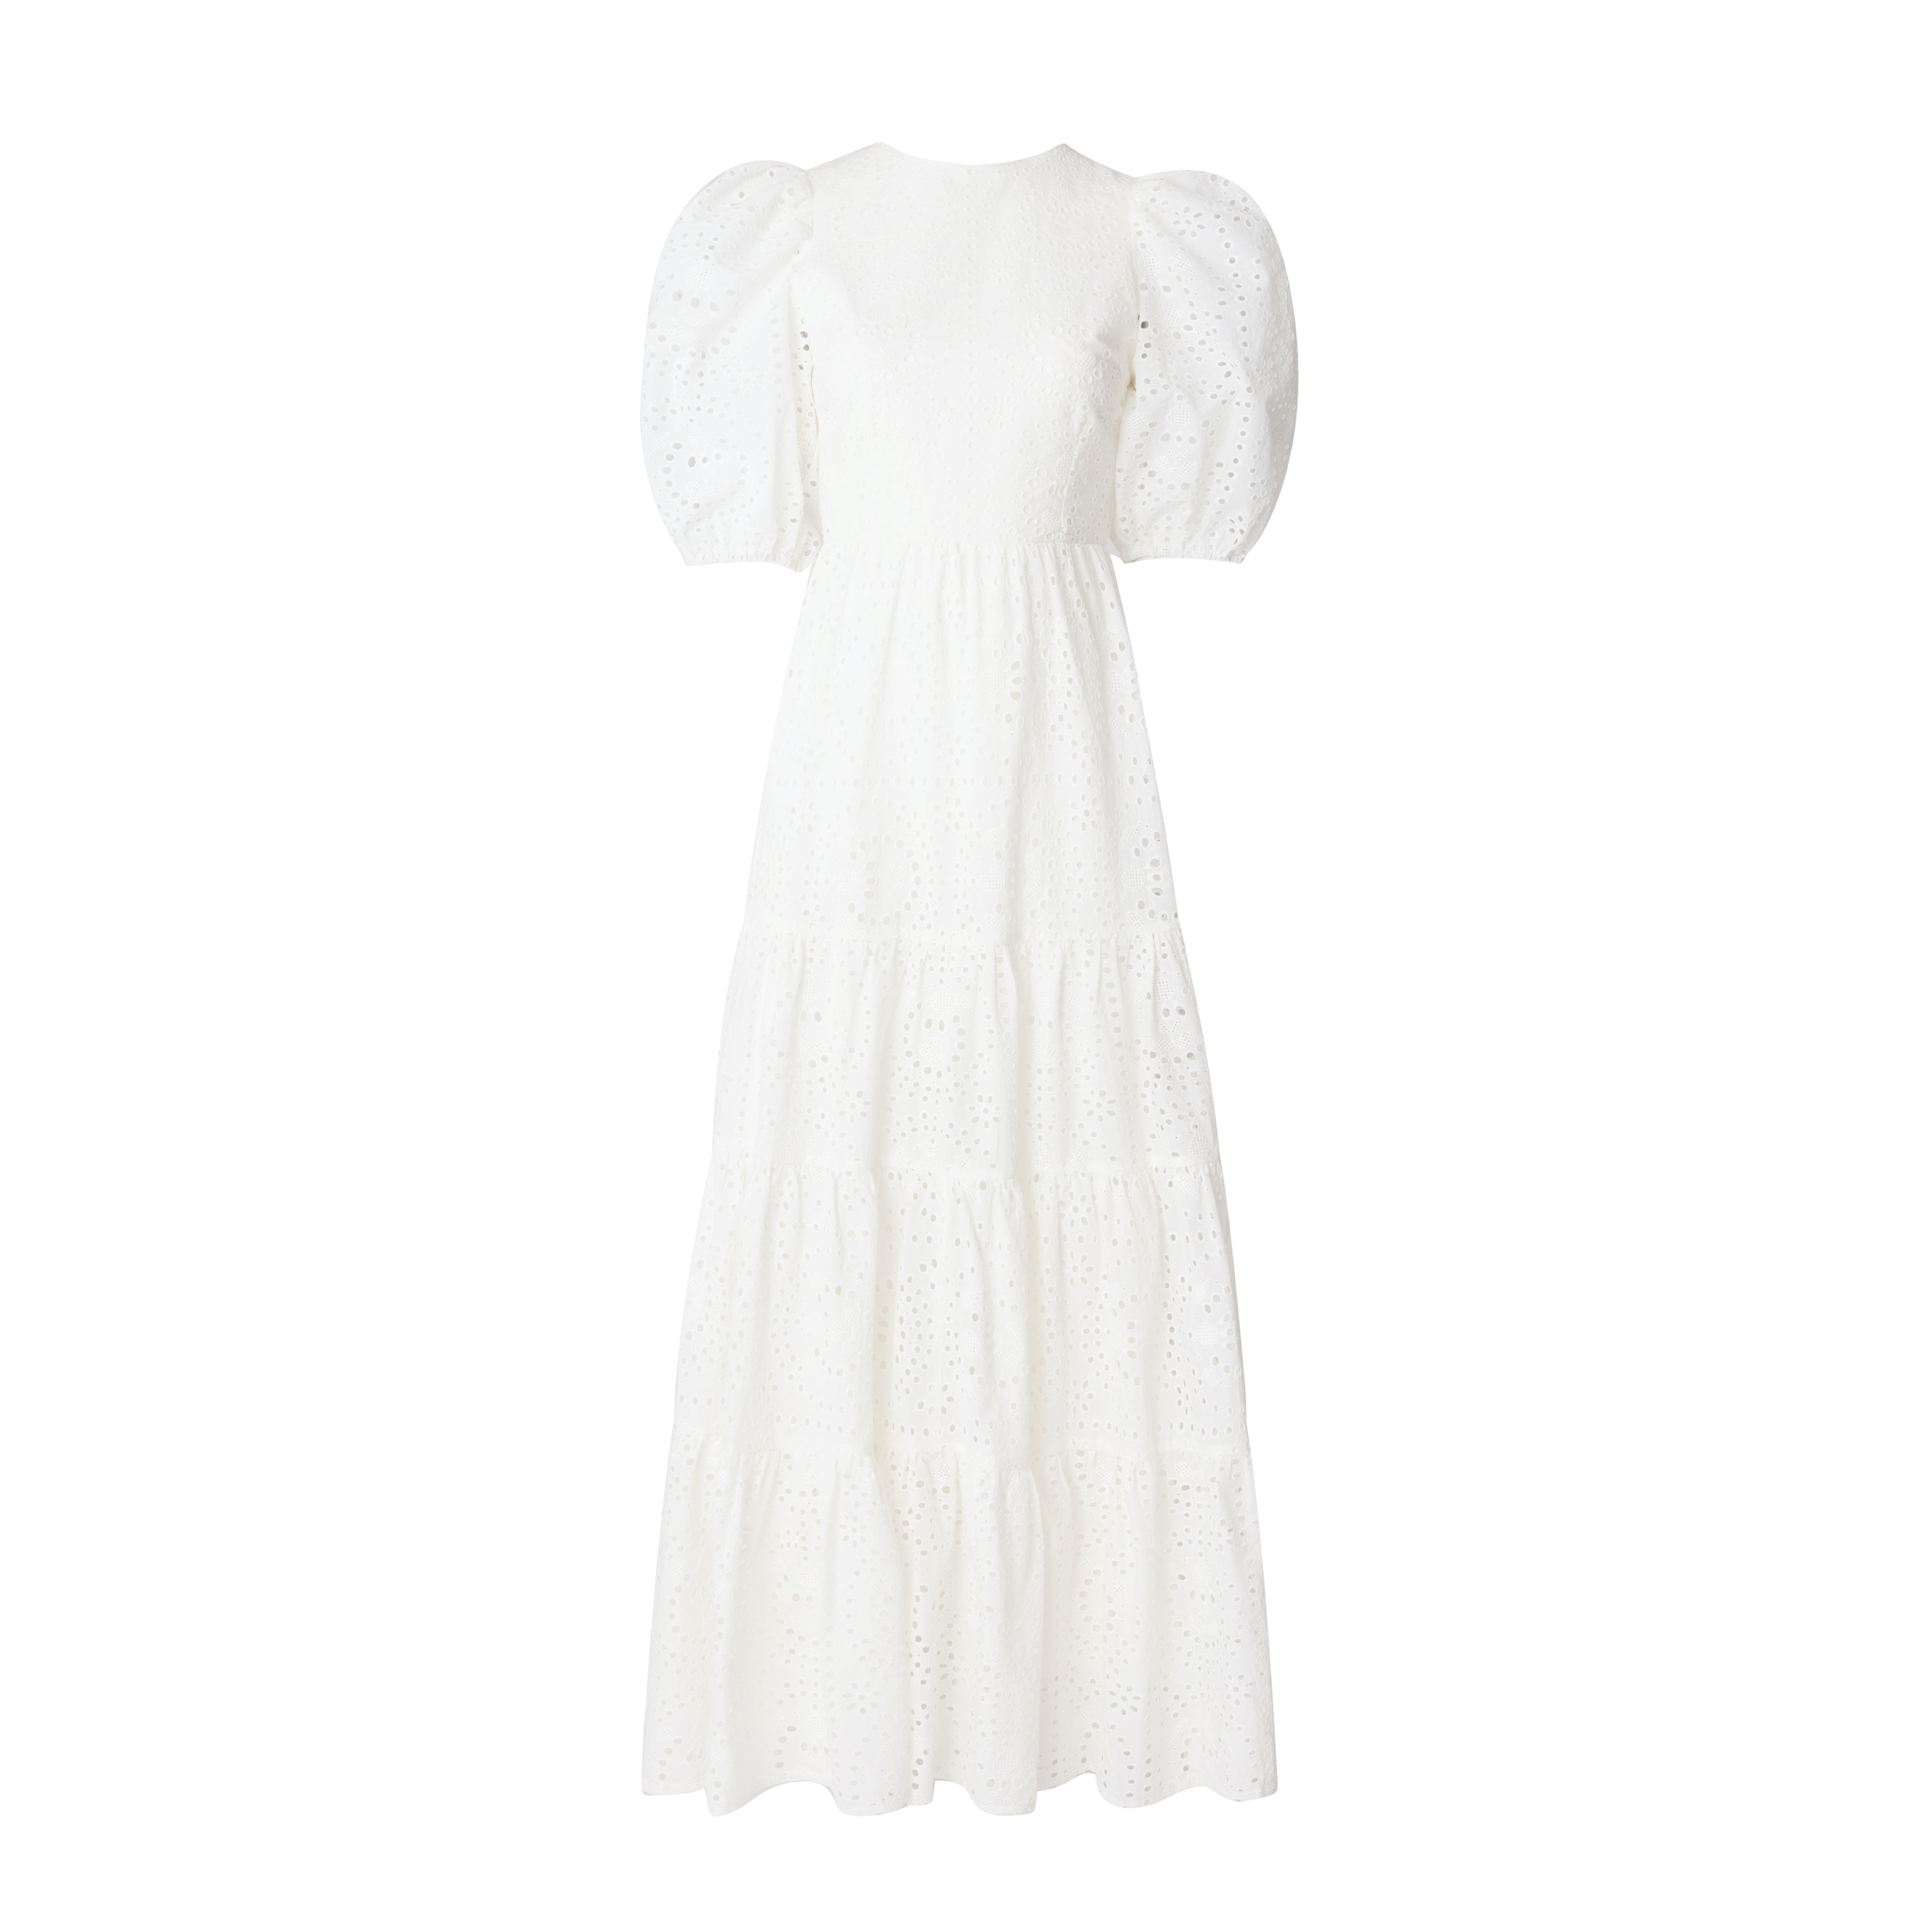 Mandibreeze Resort wear white dress 100% cotton vit sommarklänning bomullsklänning midsommarklänning bröllopsklänning 